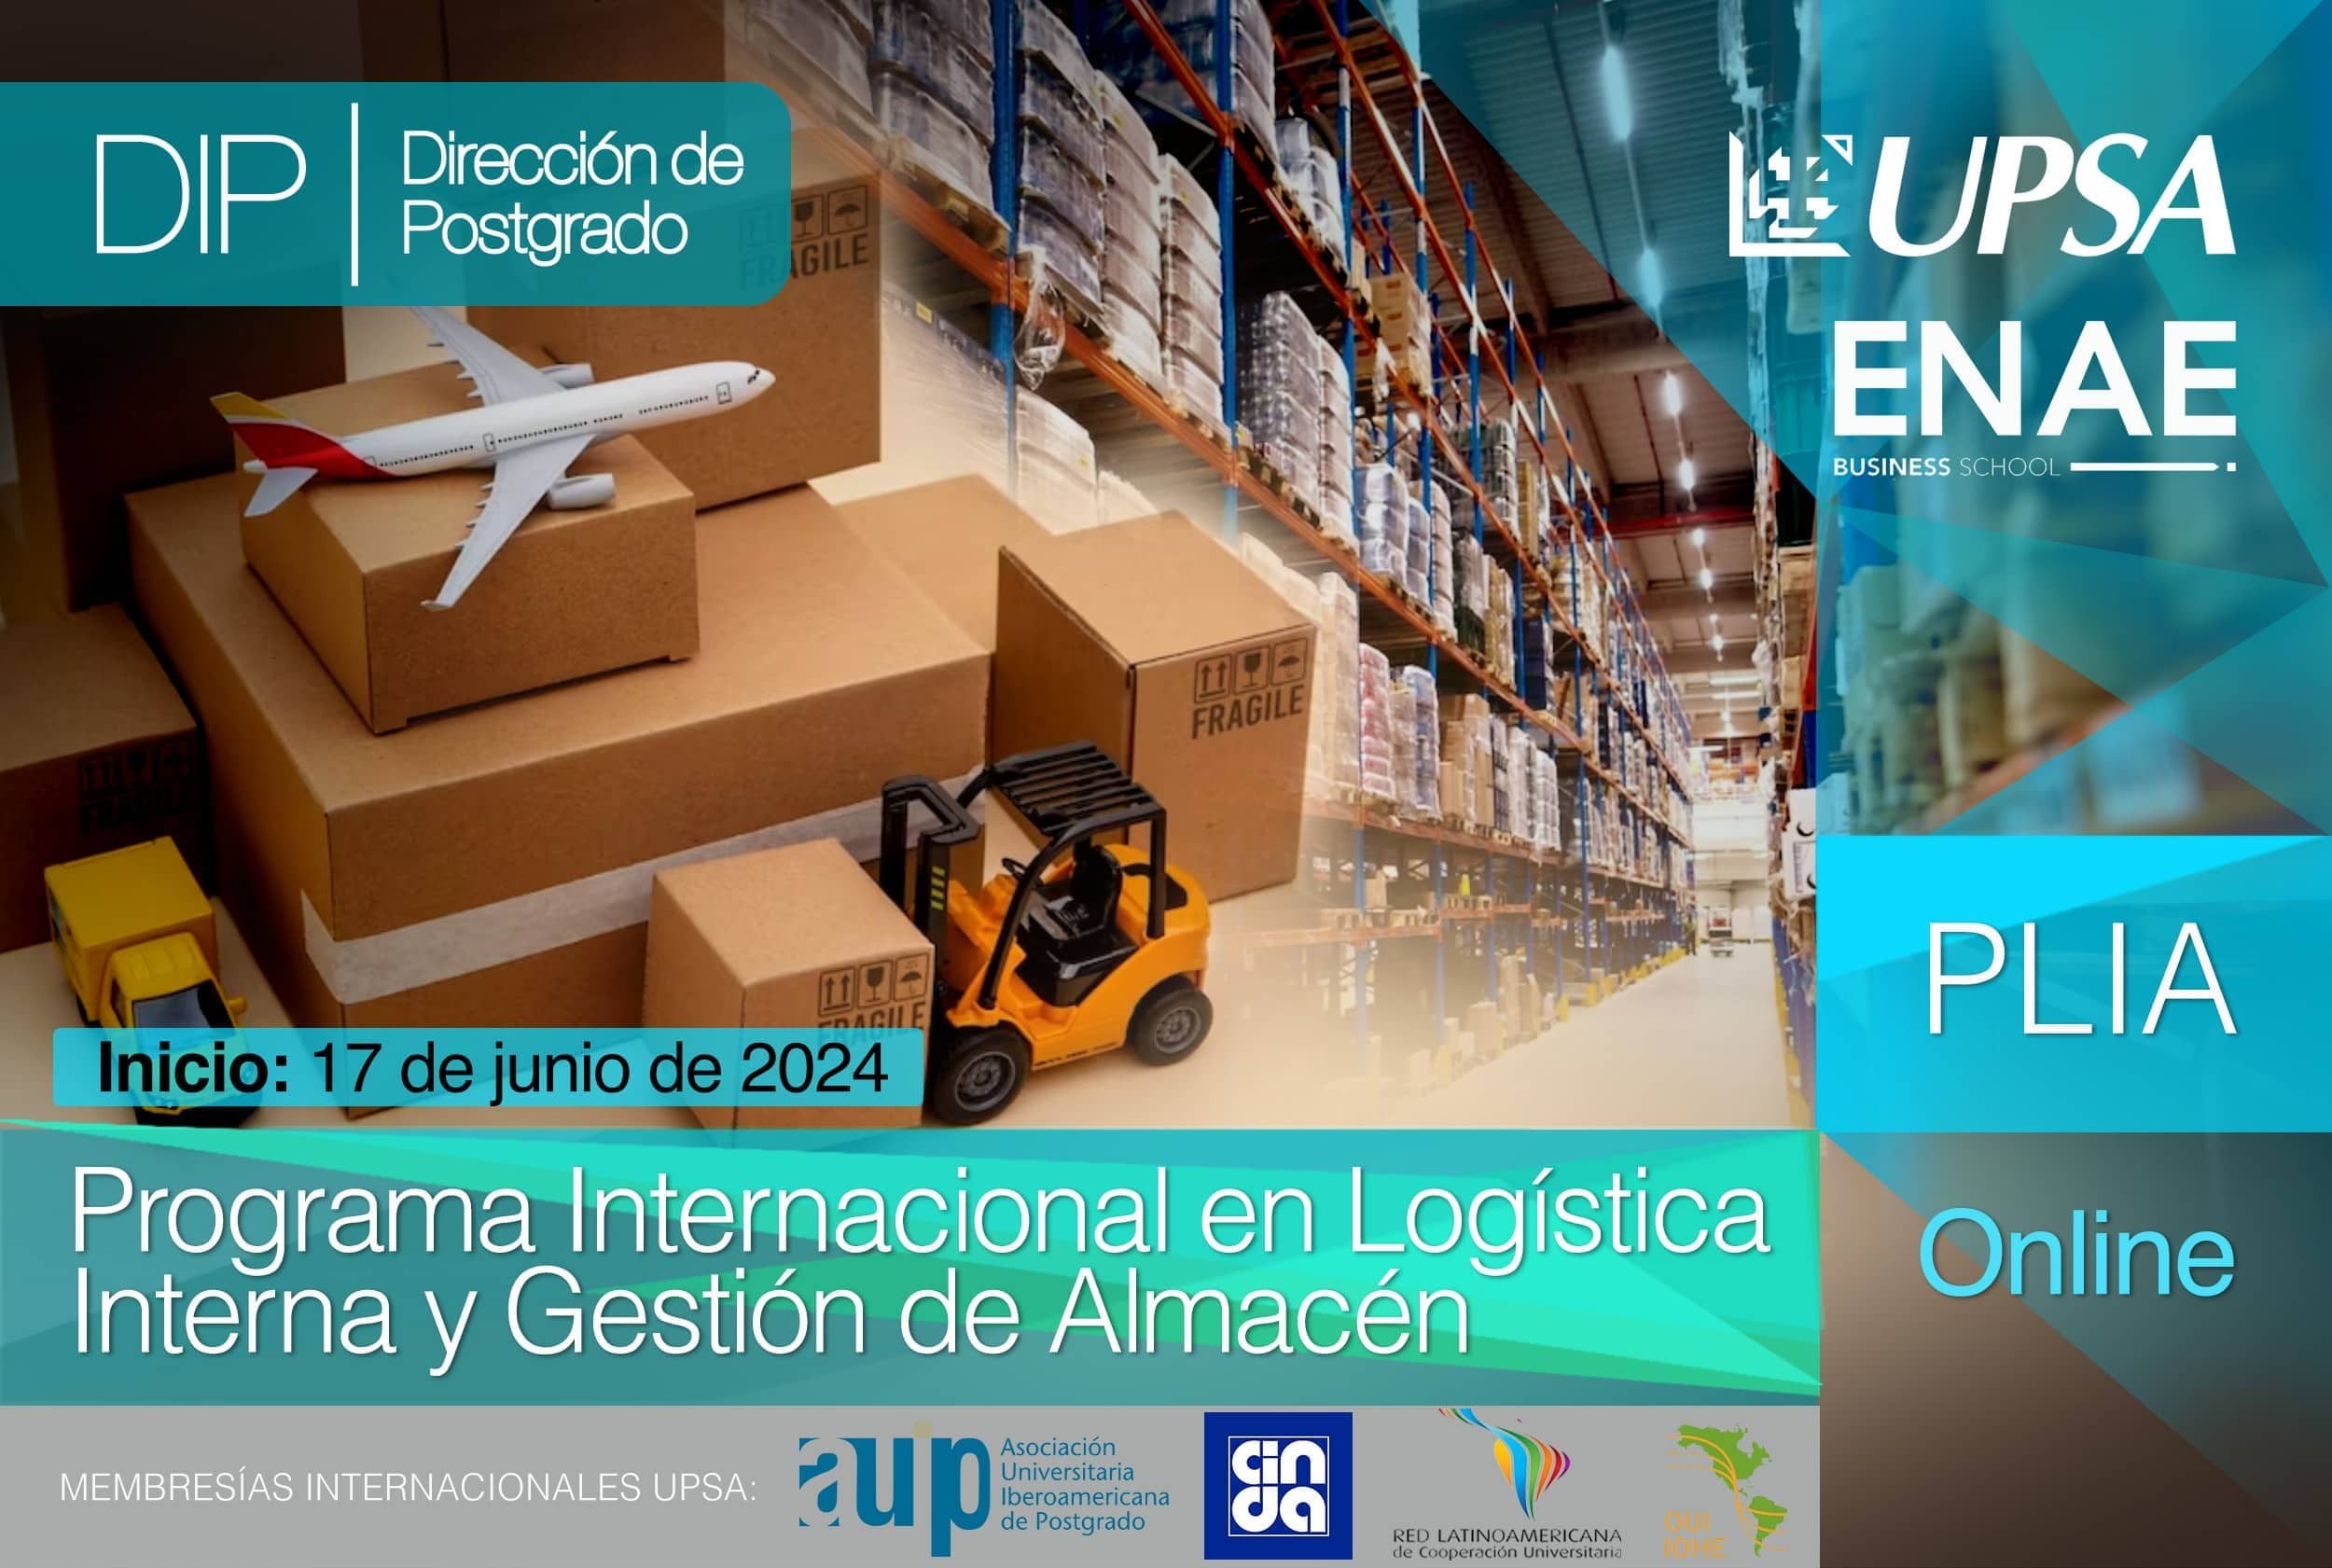 Programa Internacional en Logística Interna y Gestión de Almacén (ENAE Business School/UPSA)